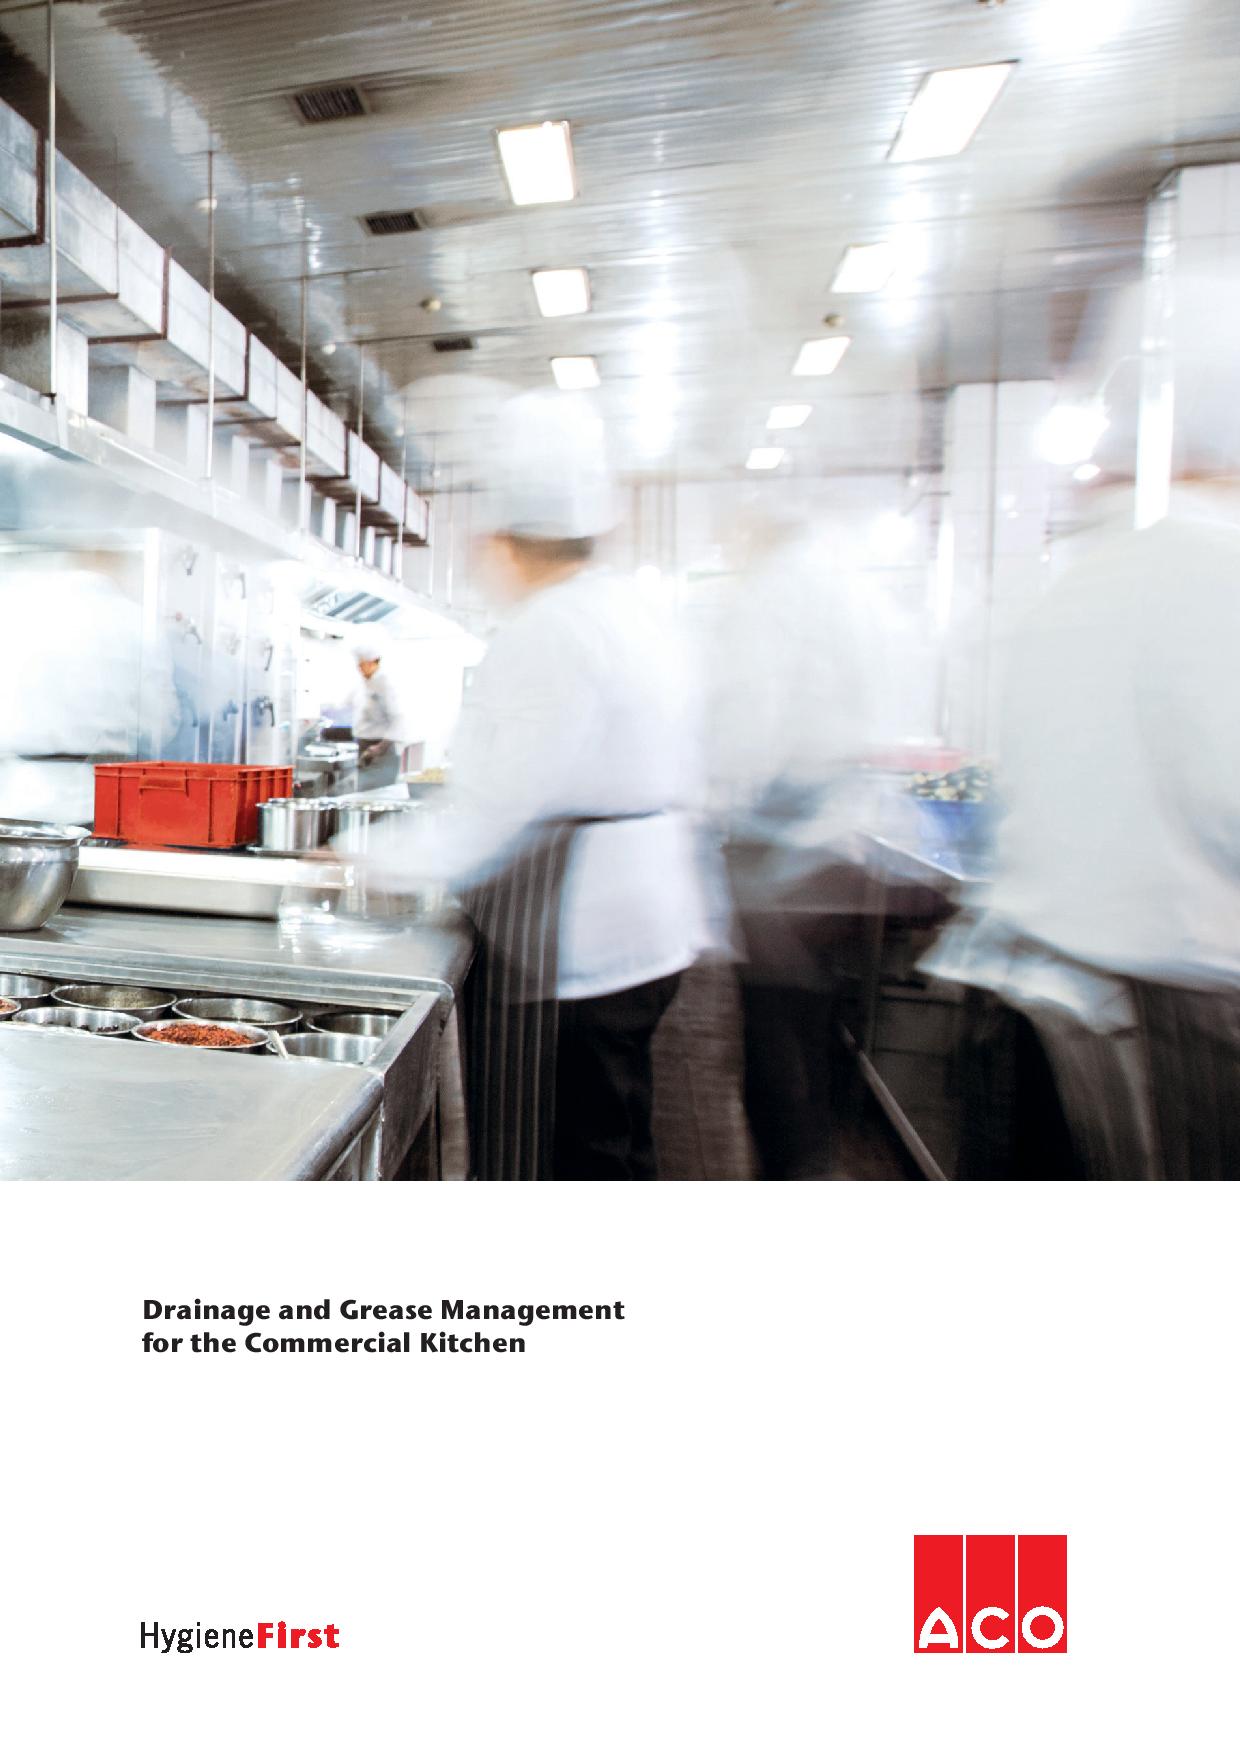 ACO upravljanje i prečišćavanje voda u komercijalnim kuhinjama